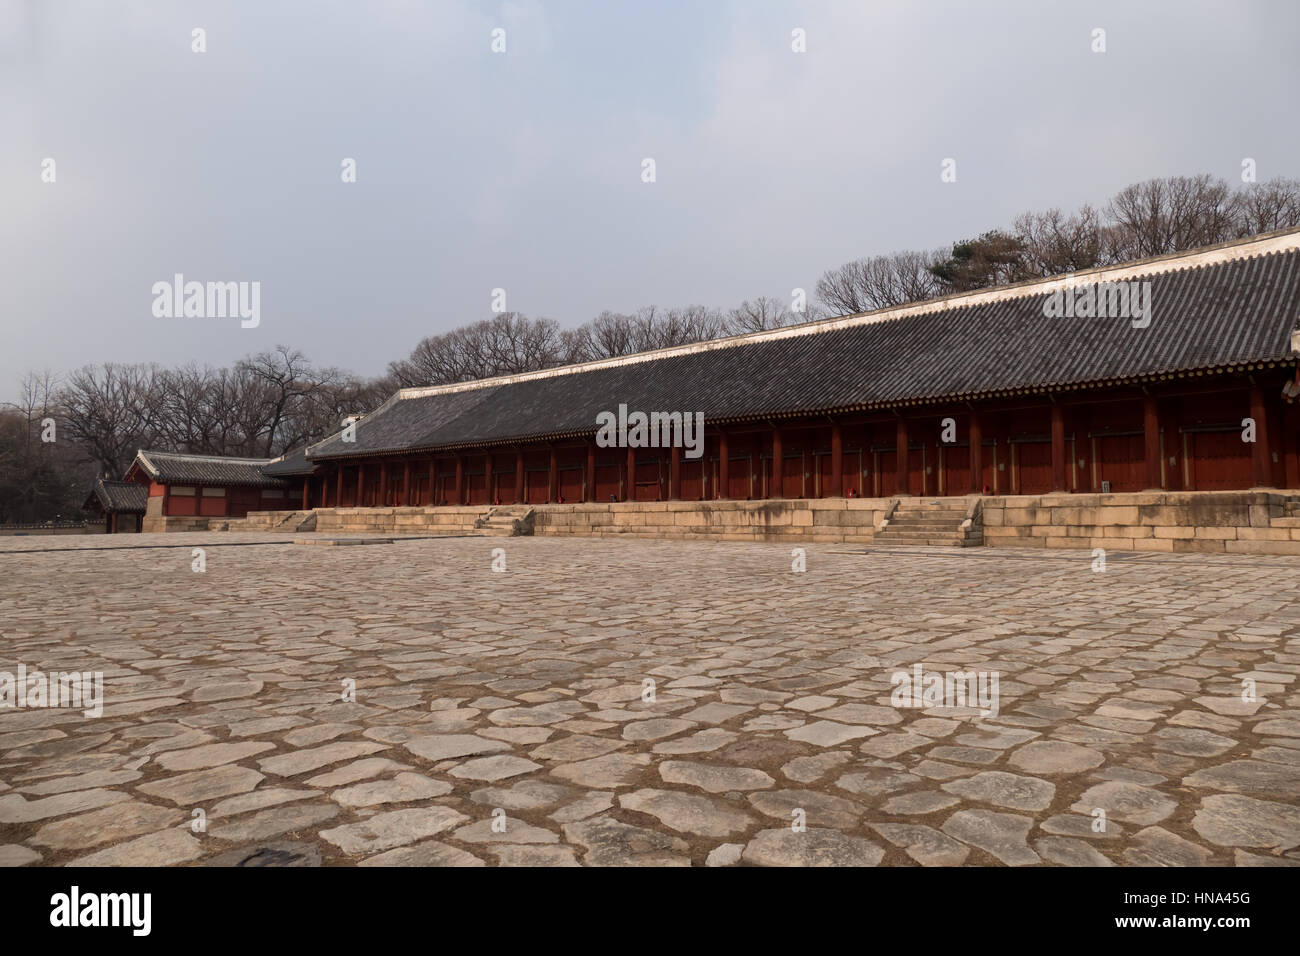 Voir d'Jeongjeon, le couloir principal d'un sanctuaire de Jongmyo, Confucianisme Coréen, monument, site touristique, Site du patrimoine mondial de l'UNESCO. Séoul, Corée du Sud, Asie Banque D'Images